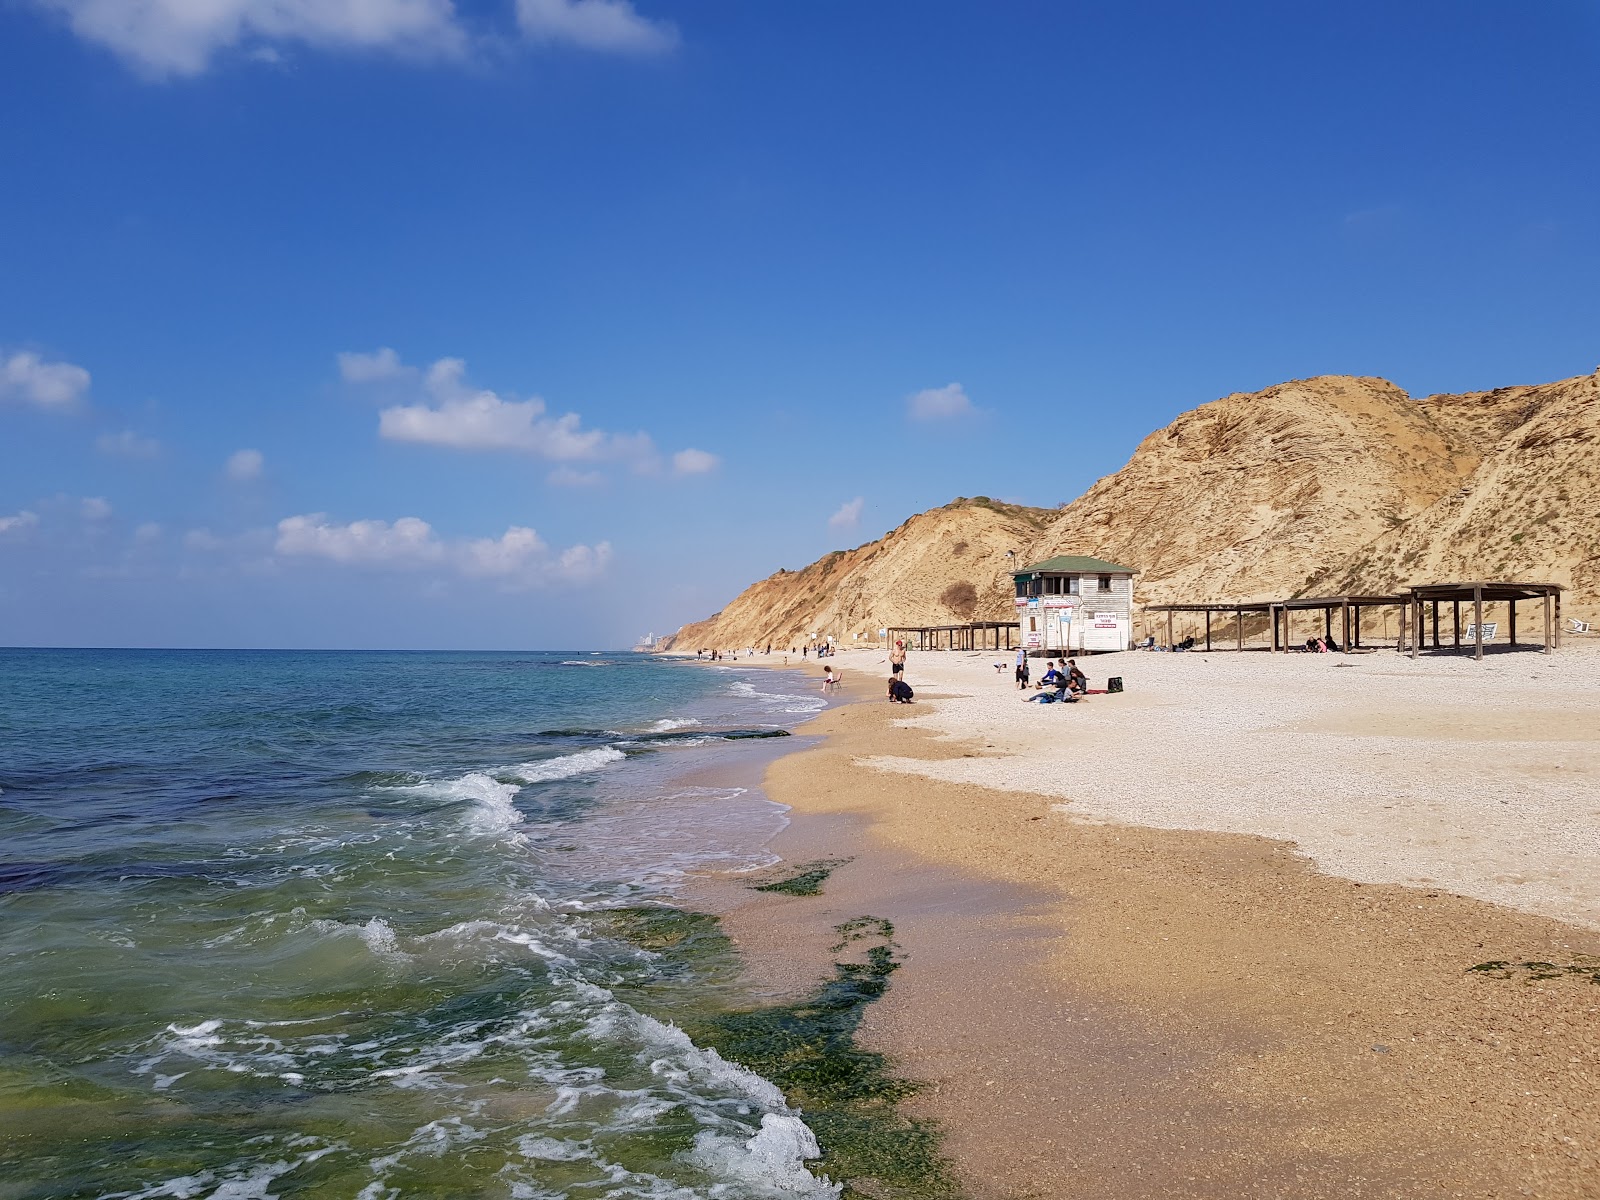 Ga'ash beach'in fotoğrafı geniş plaj ile birlikte